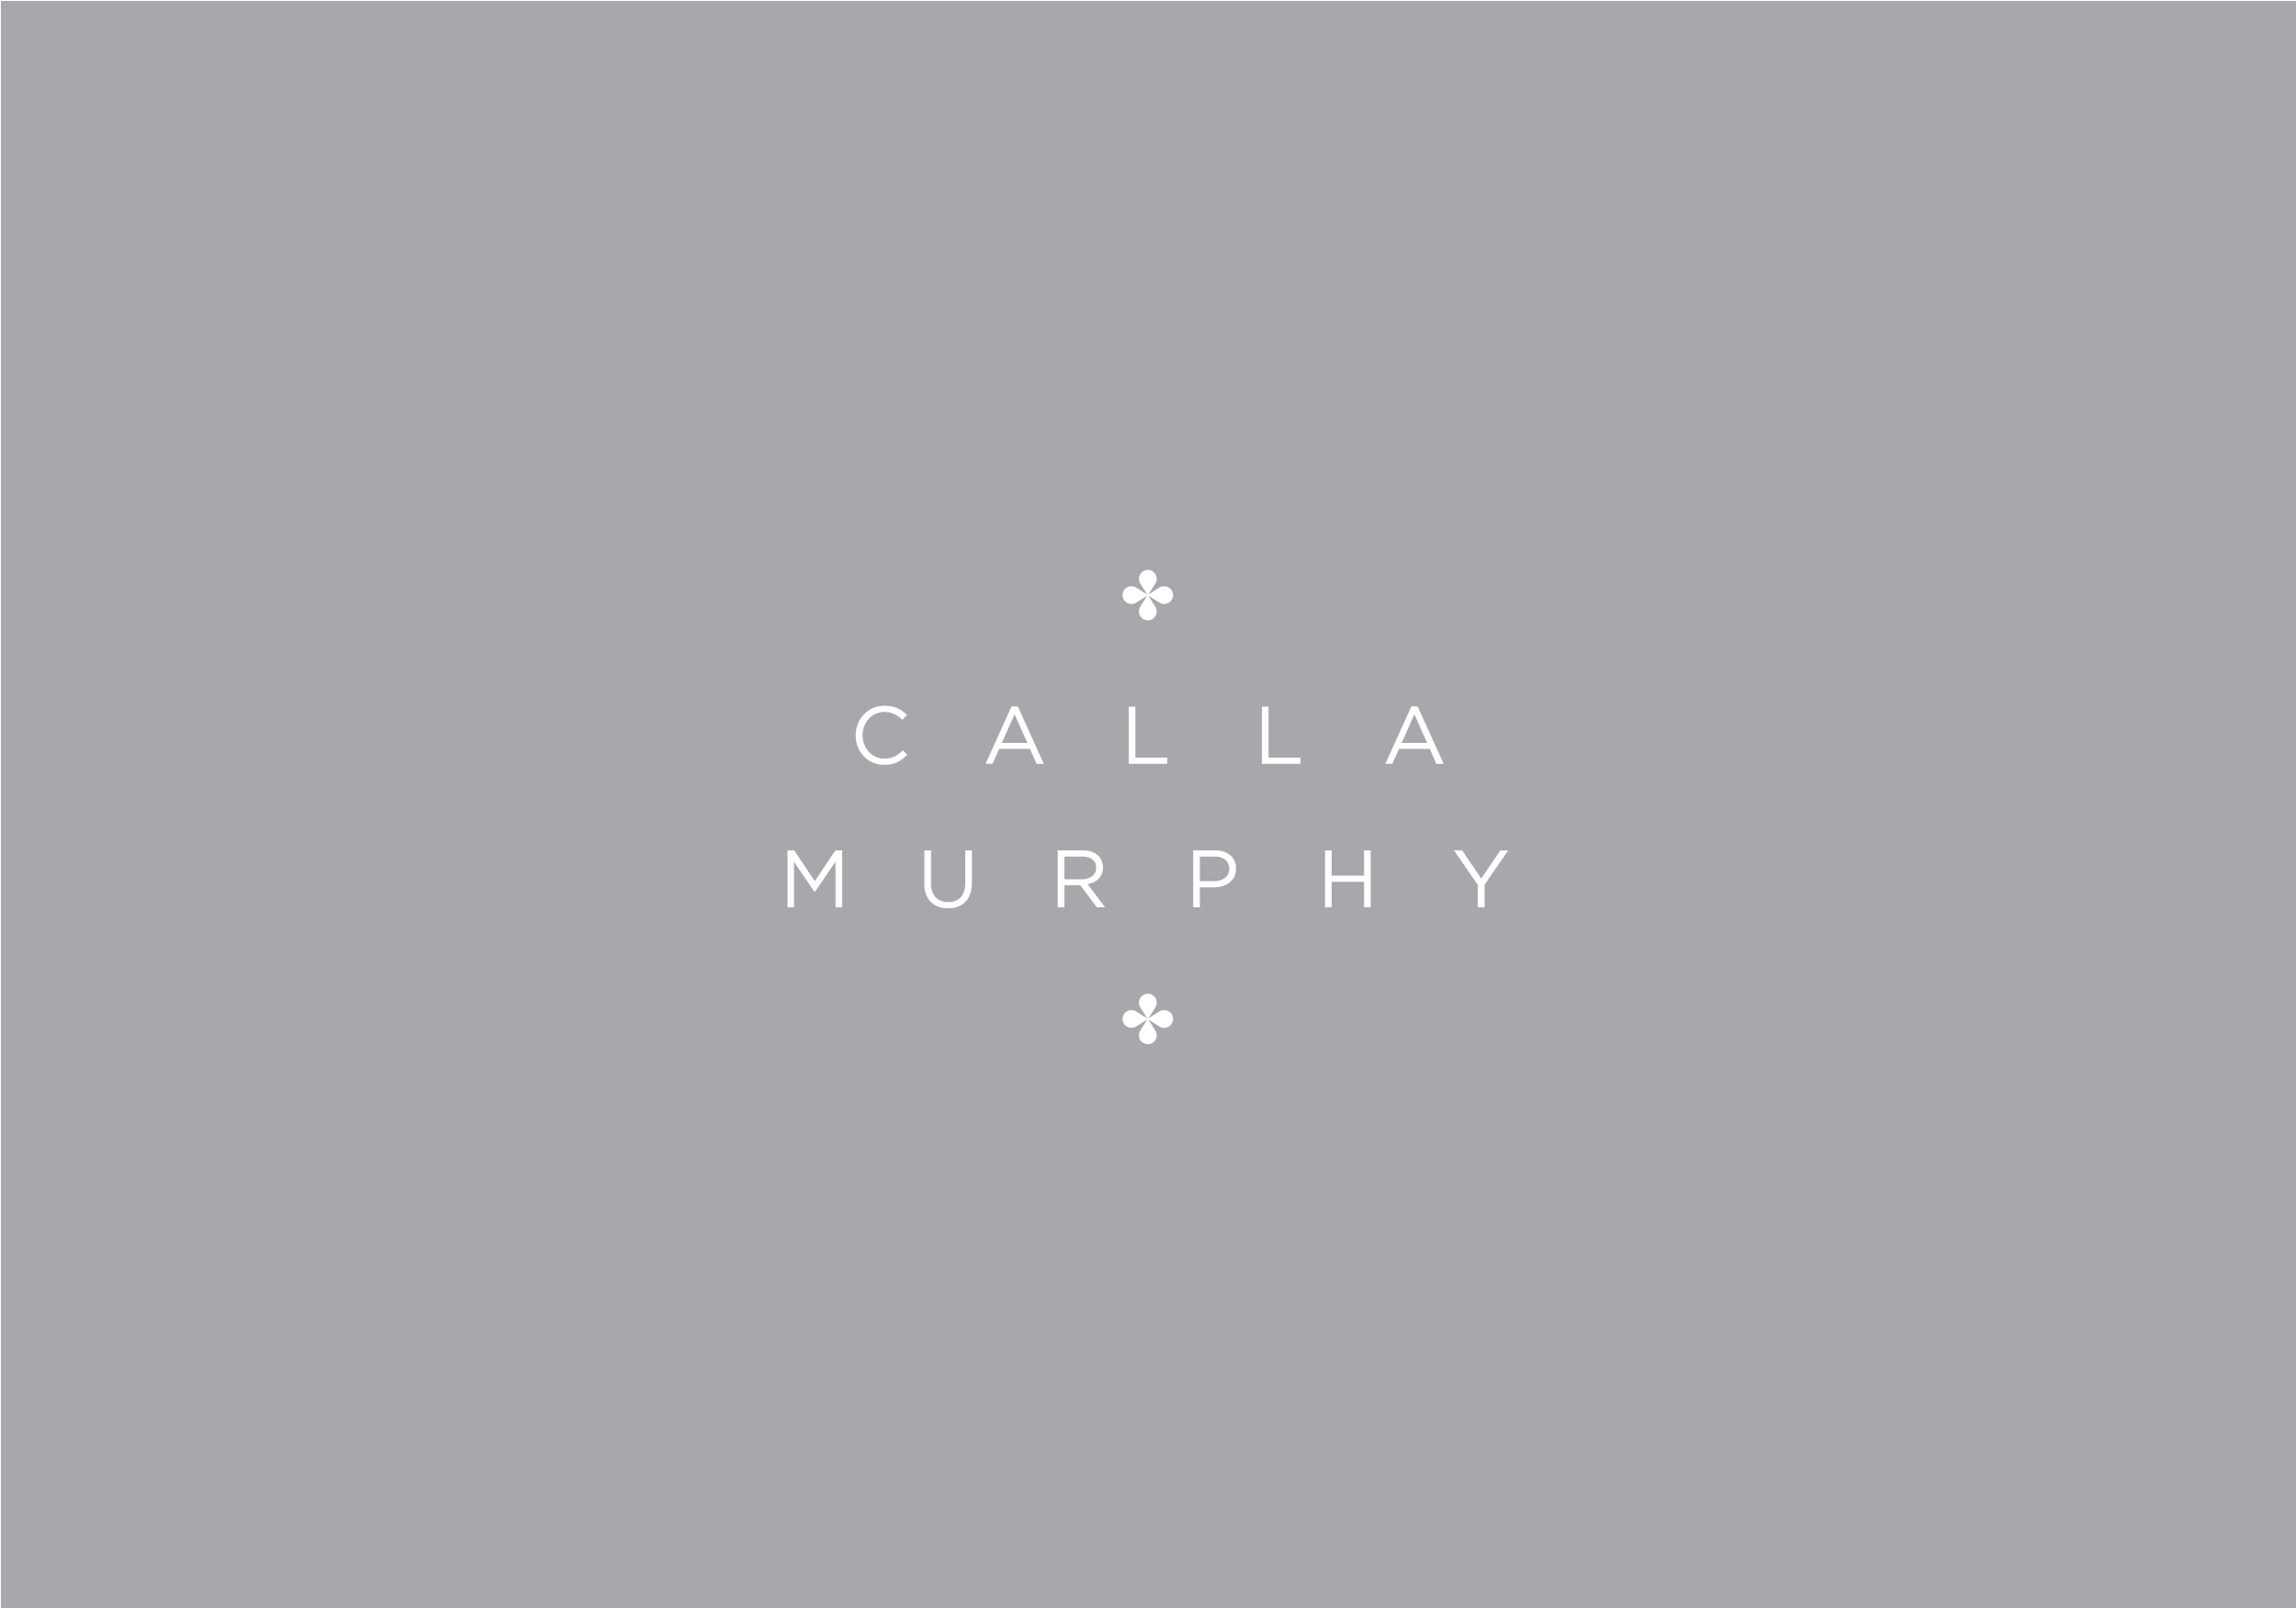 CallaMurphy_logo.jpg